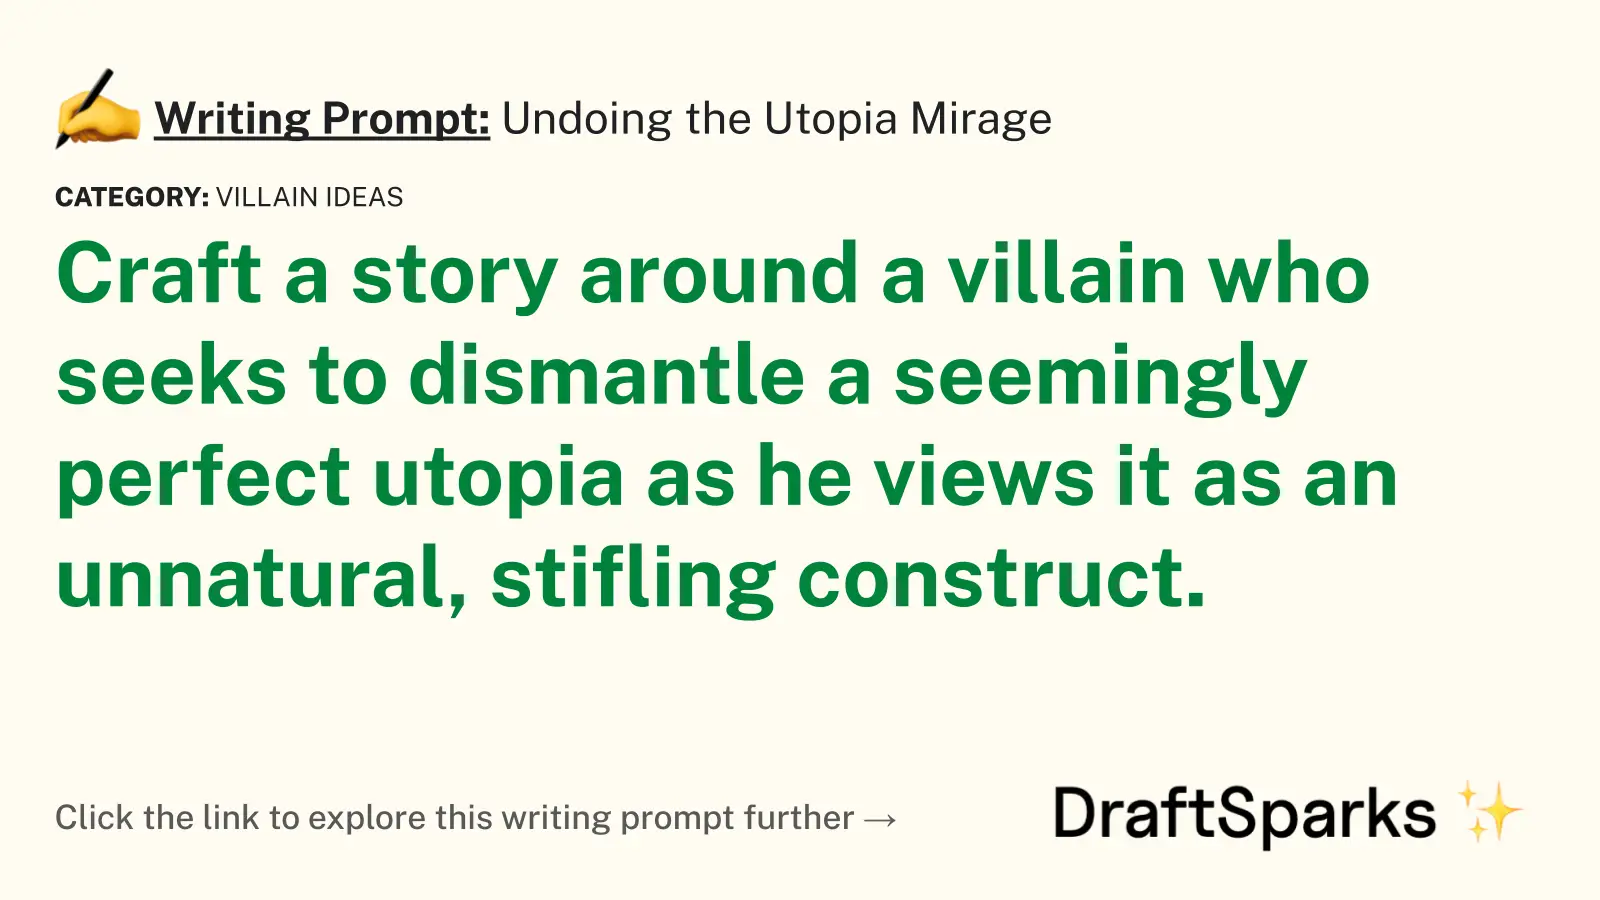 Undoing the Utopia Mirage